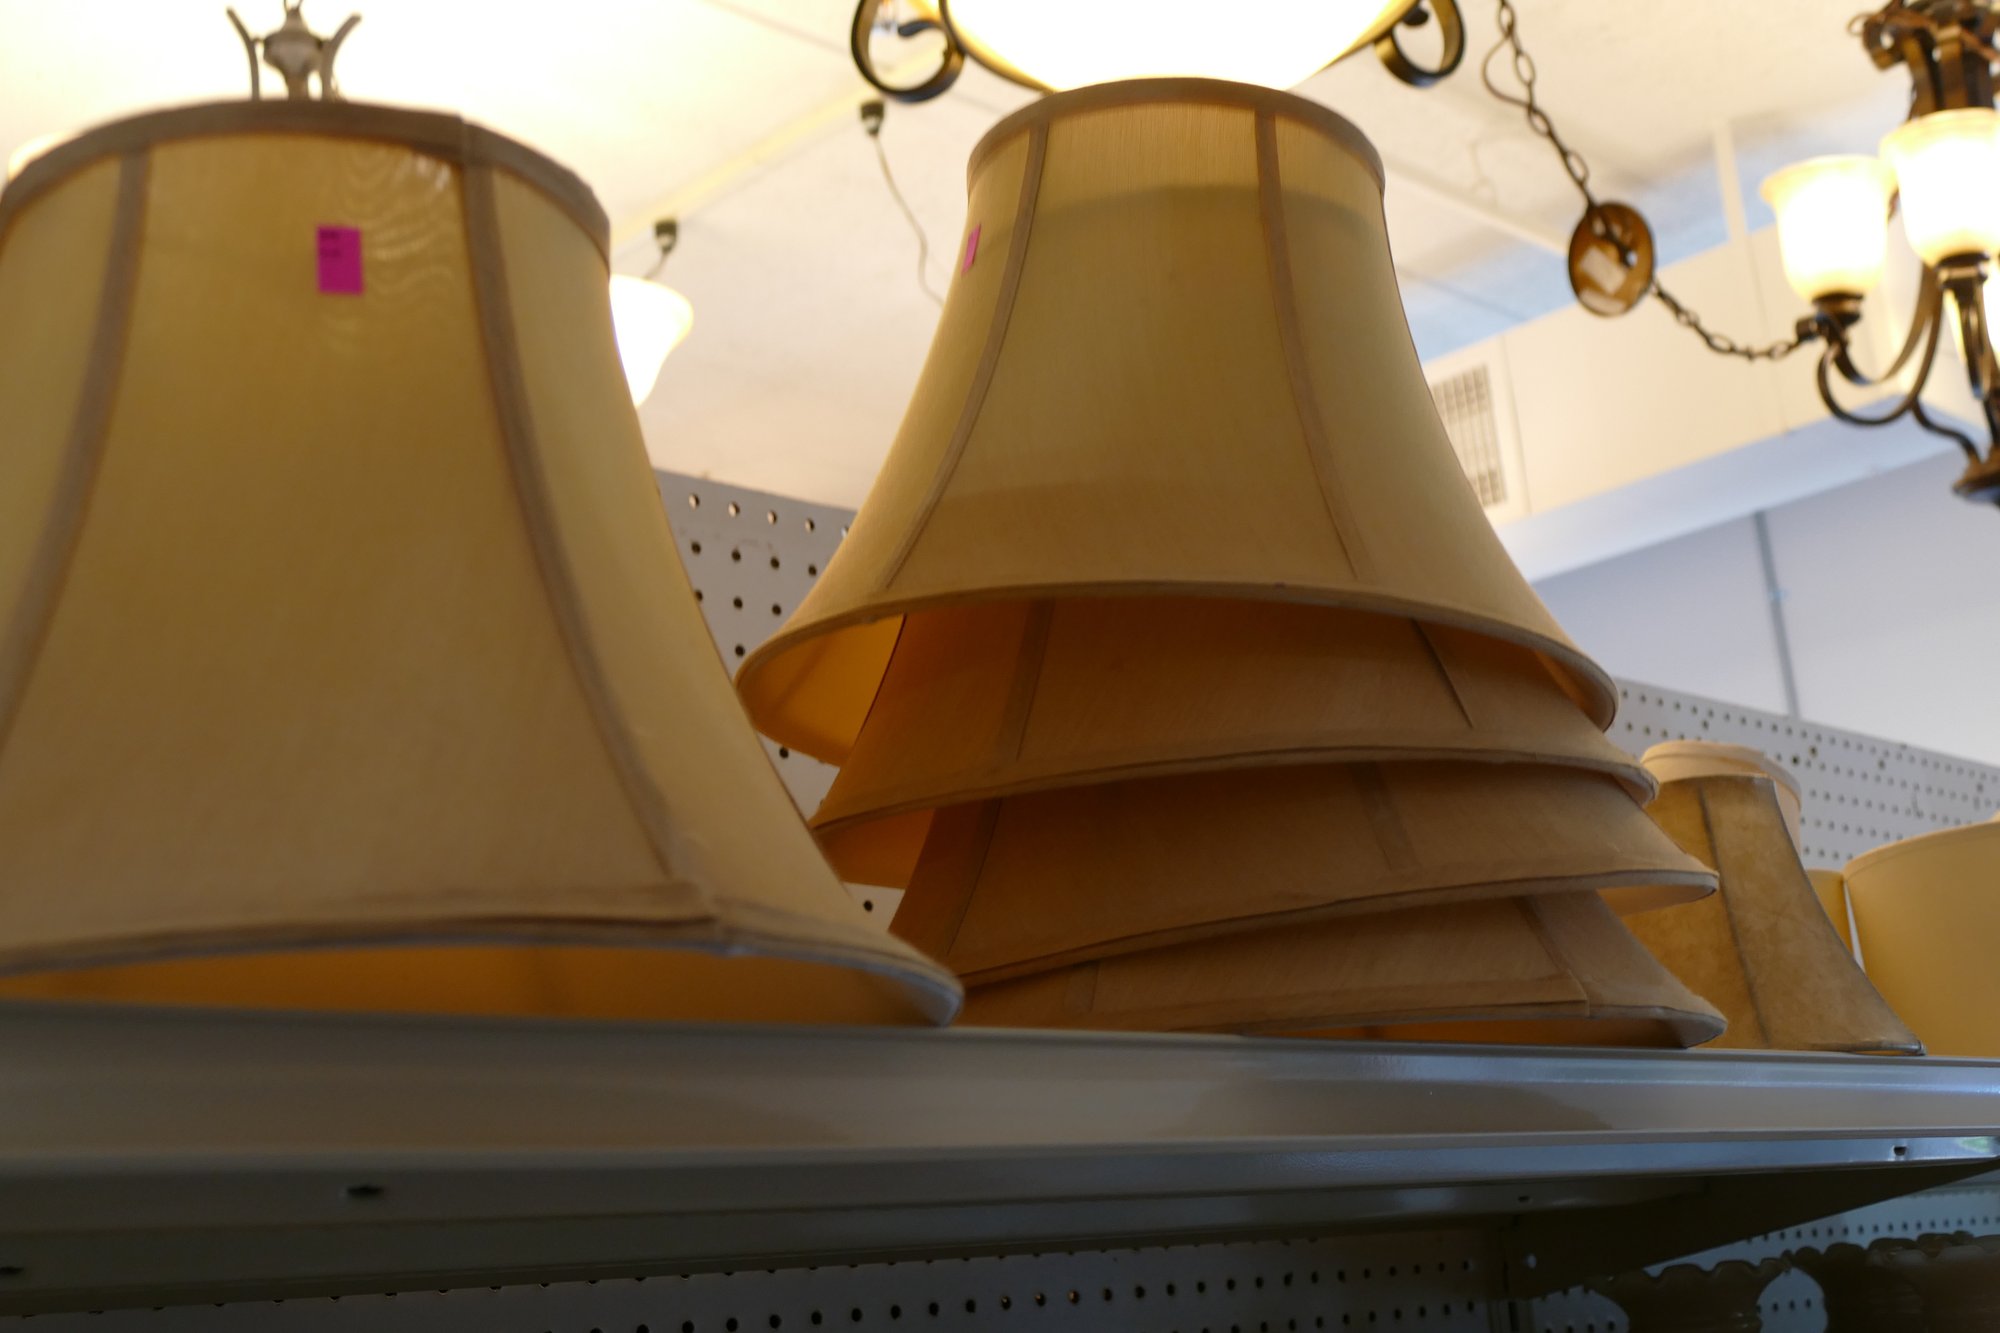 Lampshades at ReStore.